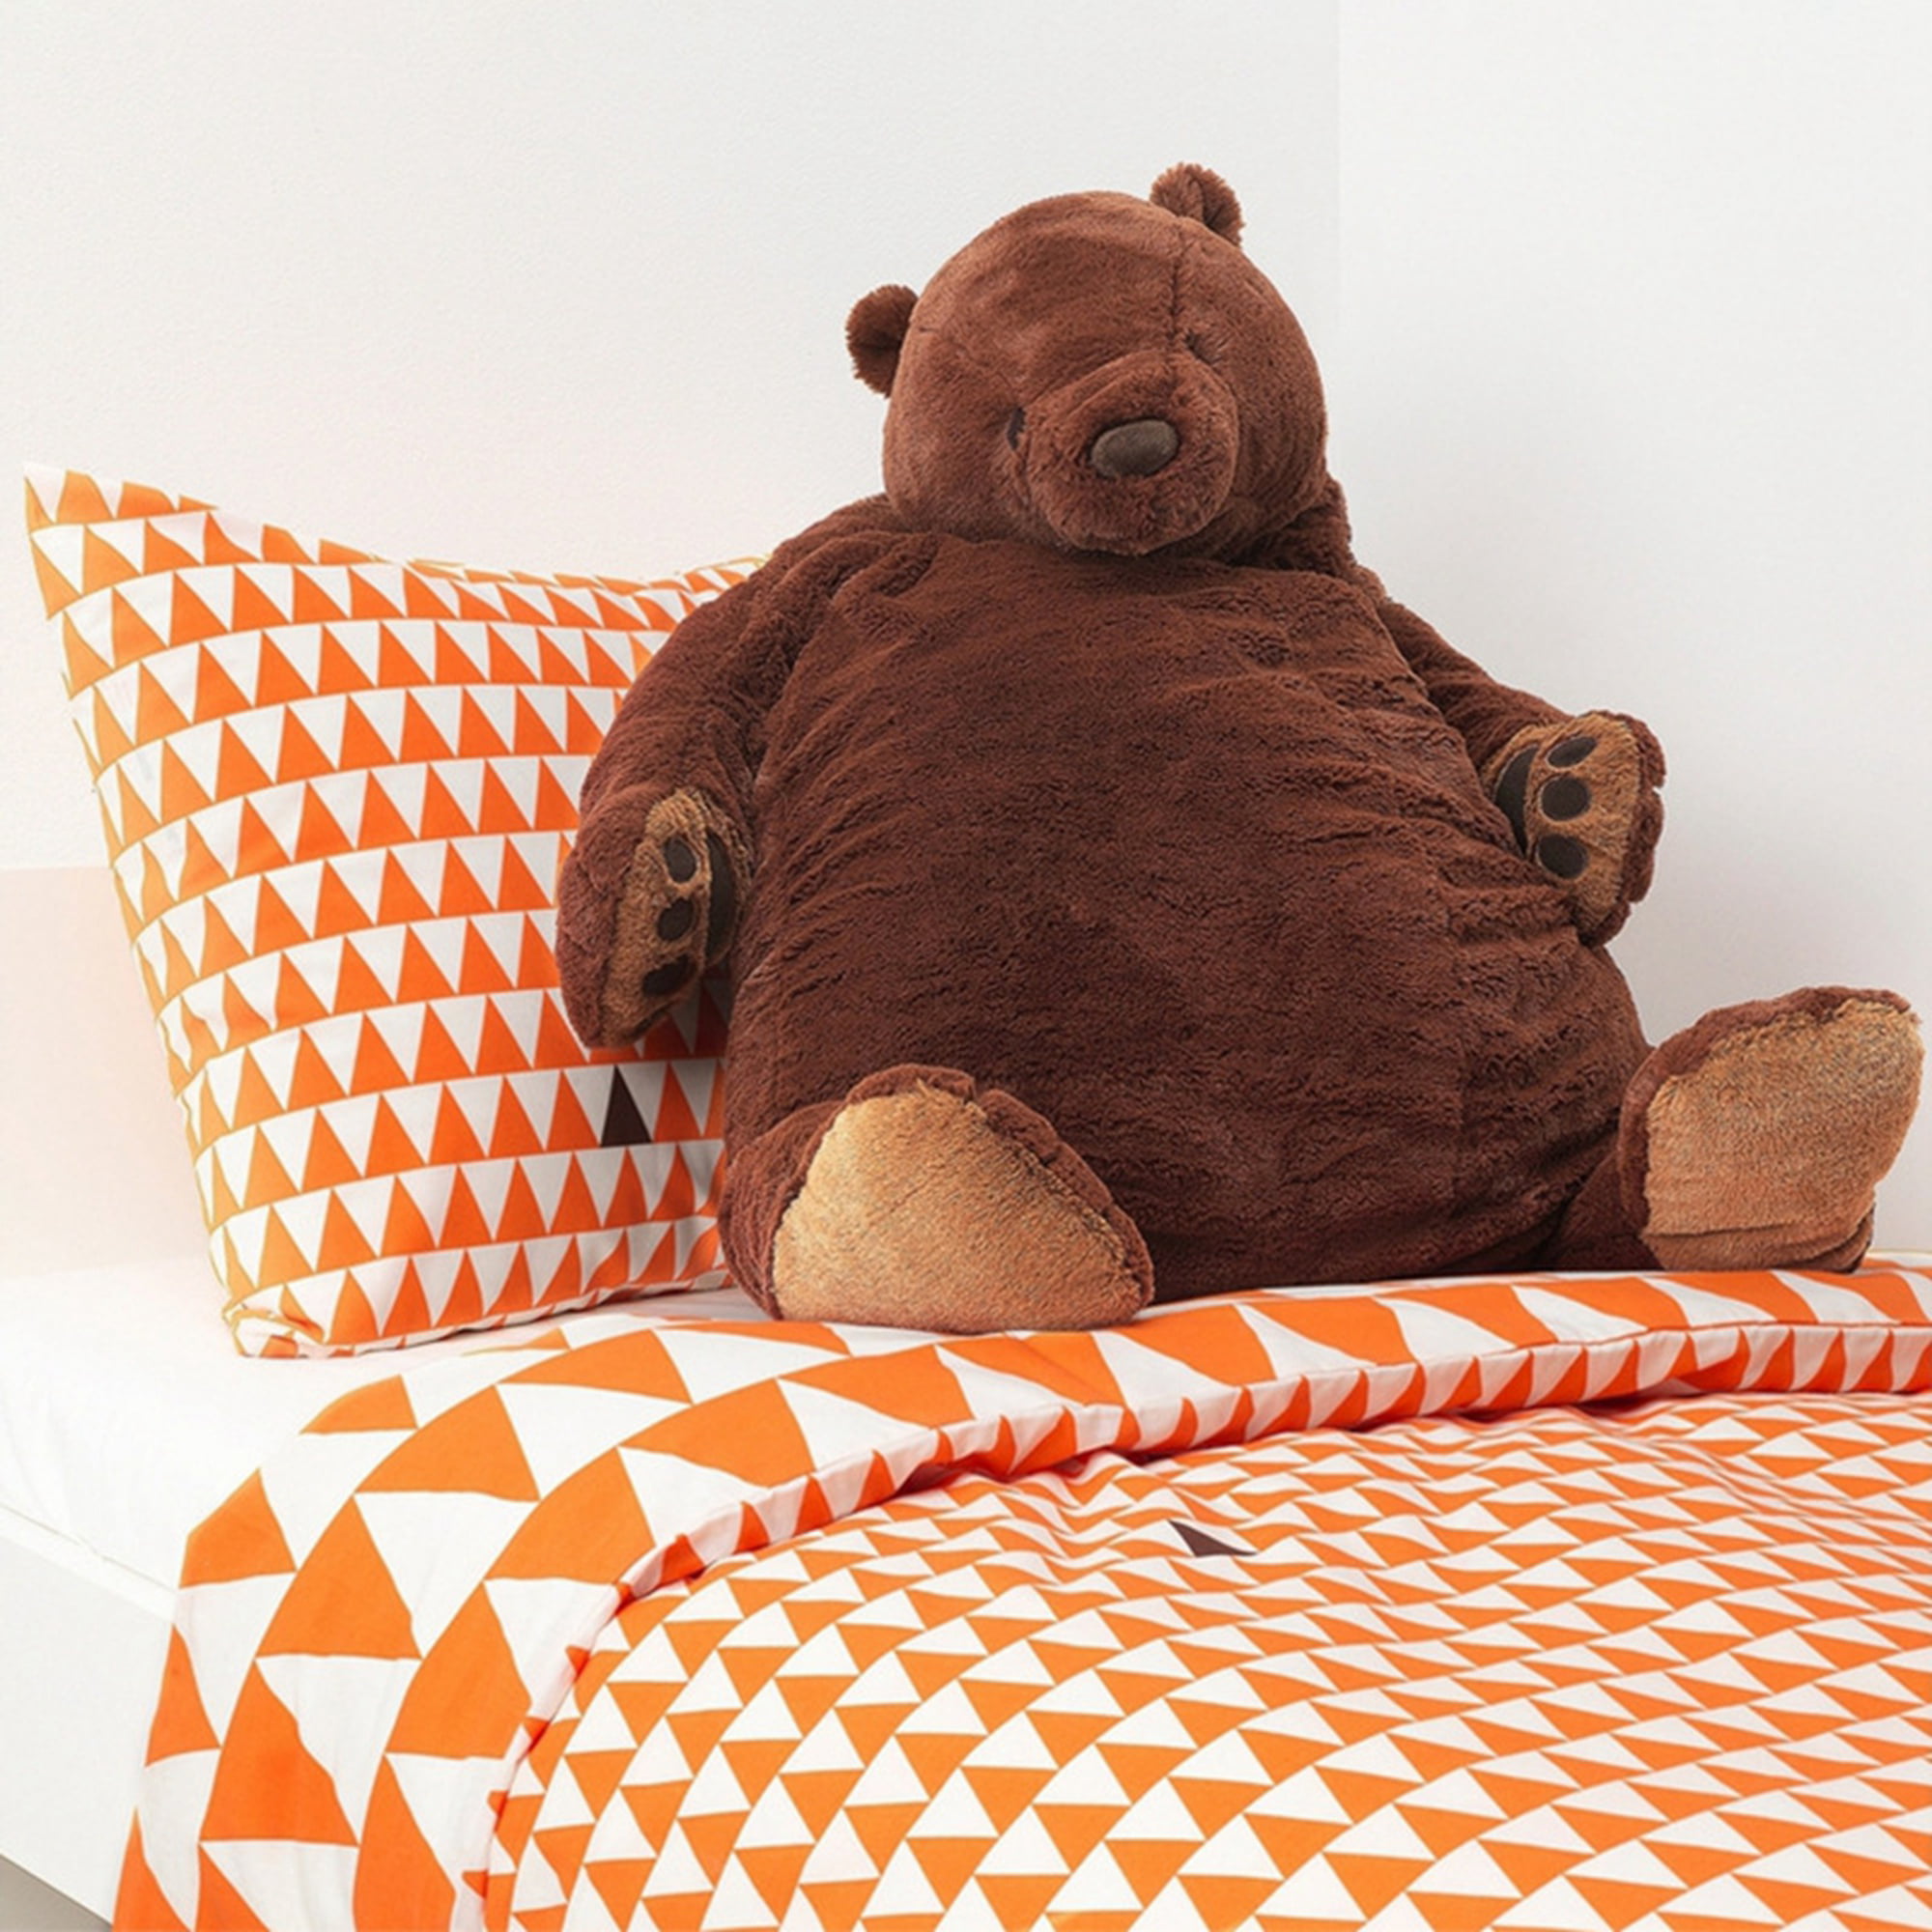 100cm giant simulation DJUNGELSKOG bear toy Brown Teddy Bear Stuffed Animal NEW 